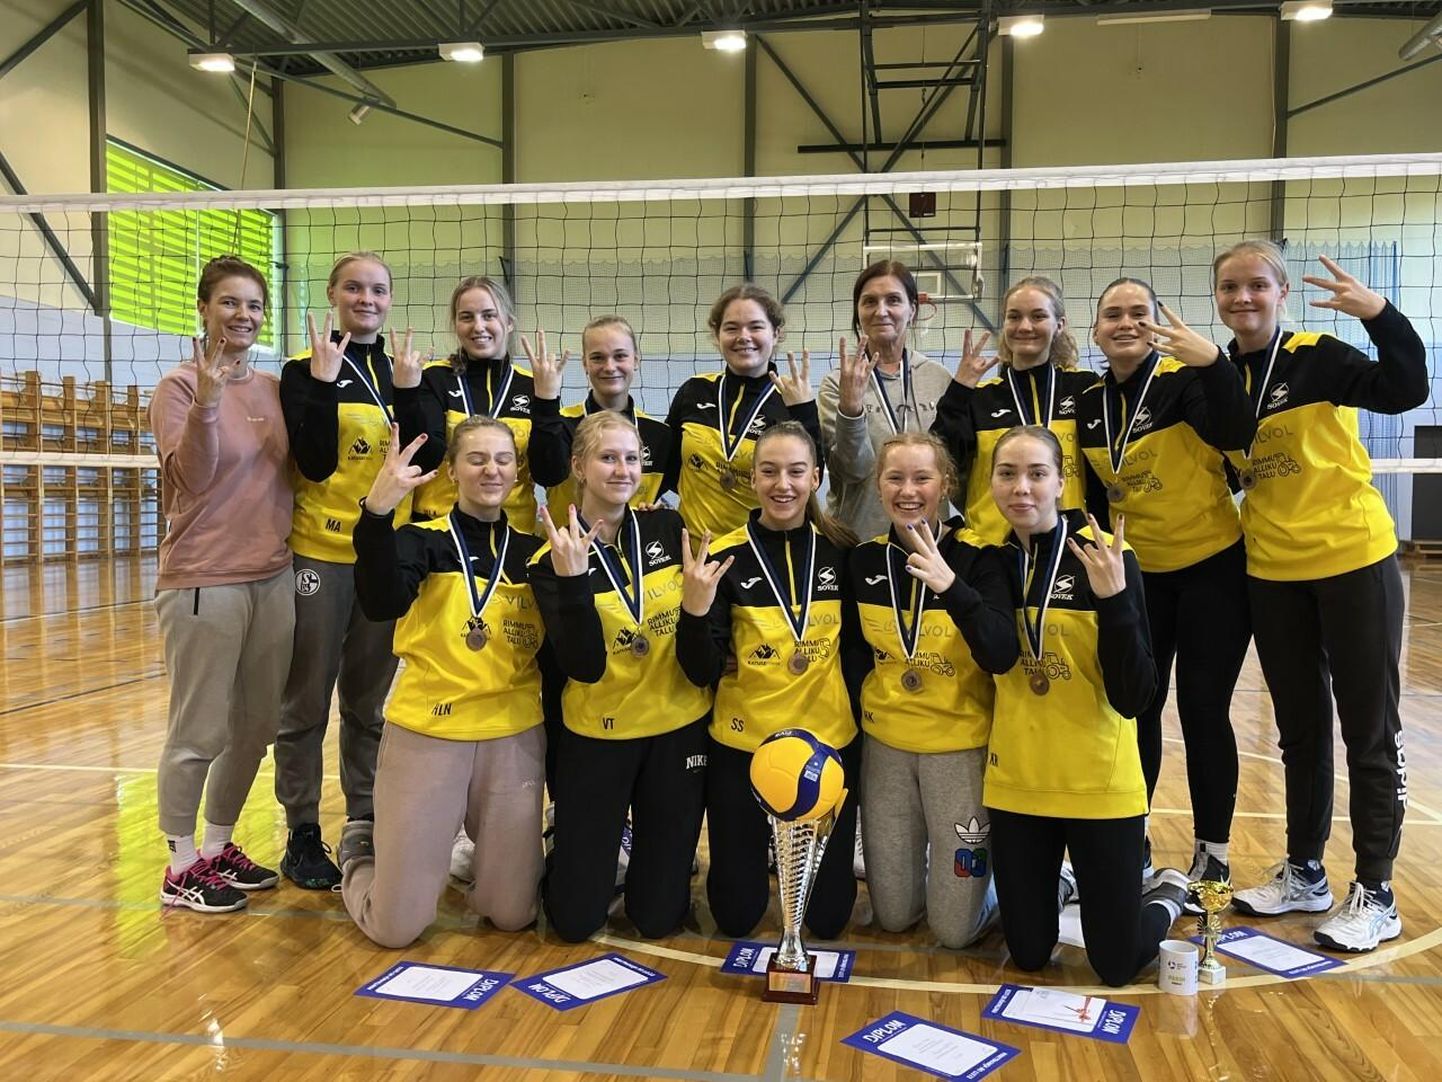 Viljandi Spordikooli/VilVoli võistkond sai nädalavahetusel Viljandis U20 neidude Eesti karikavõistluste esimesel finaalturniiril pronksi.